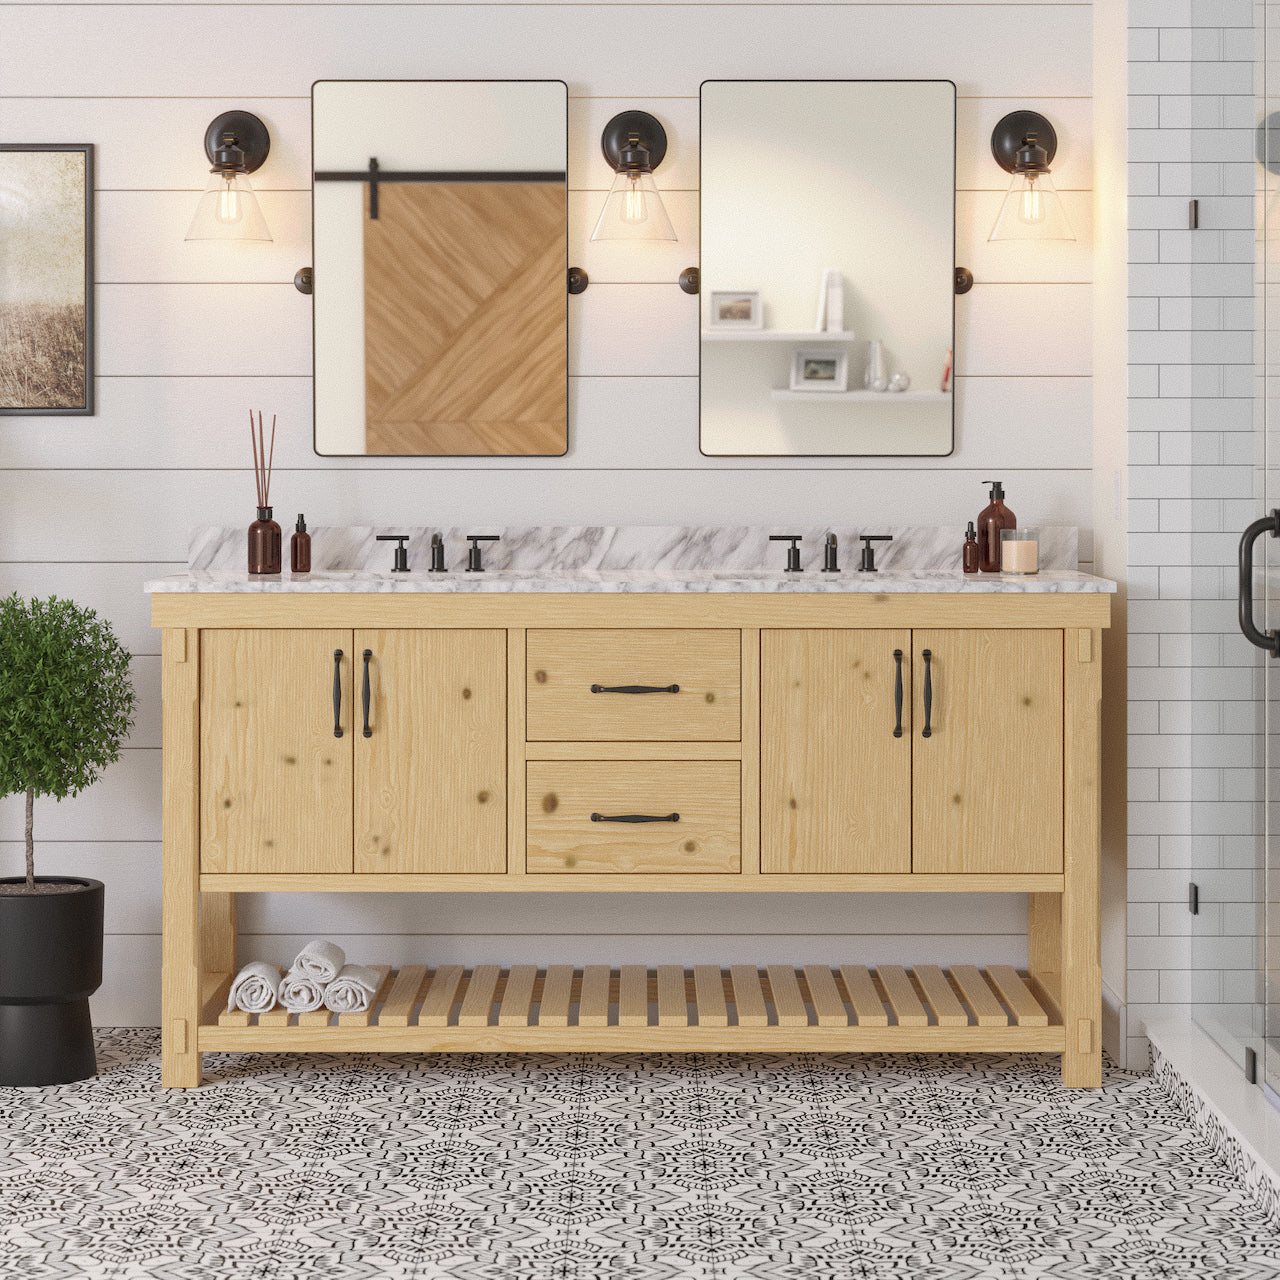 birmingham 72" rustic double sink bathroom vanity natural wood